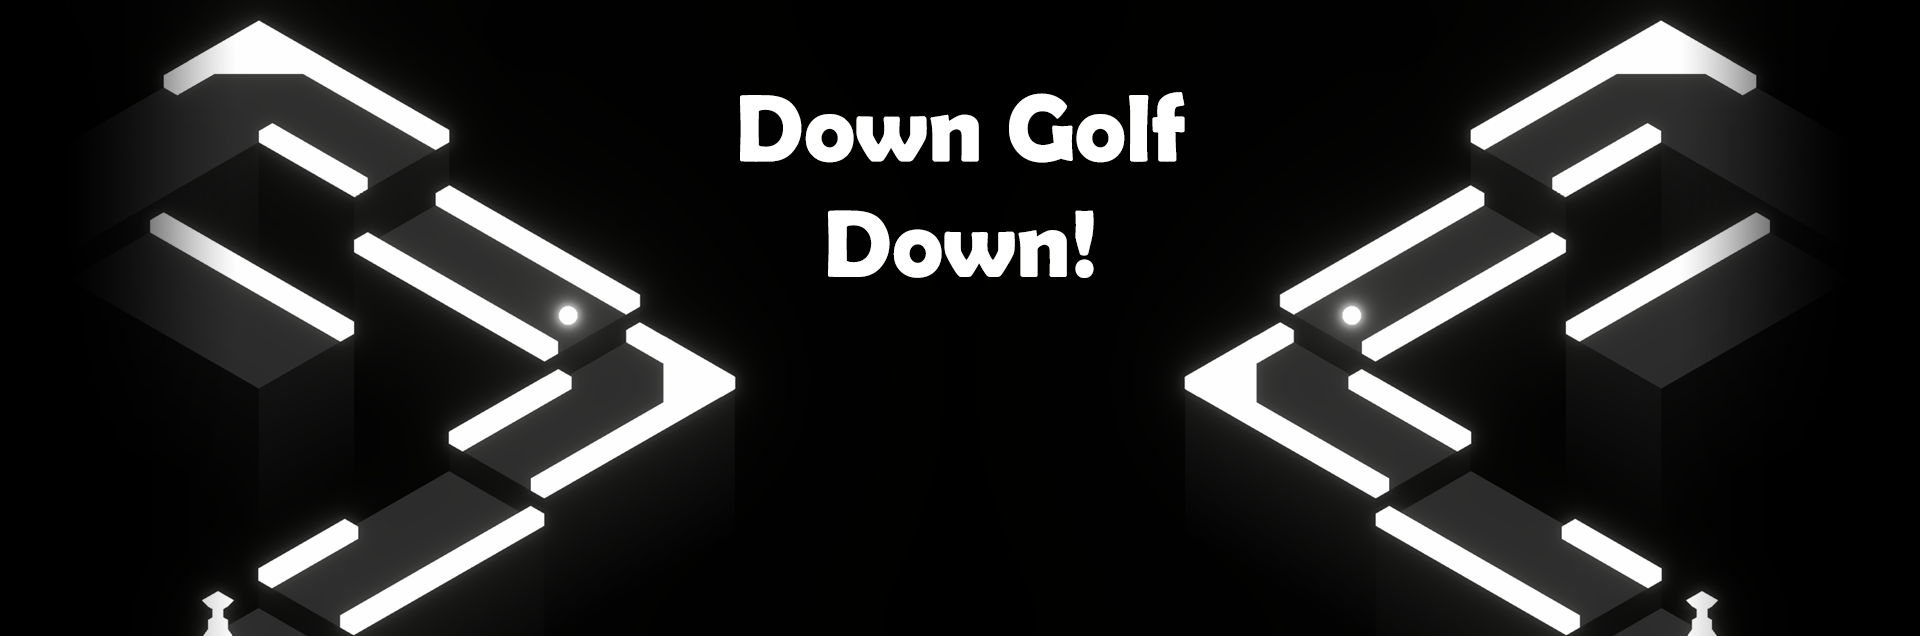 Down Golf Down!